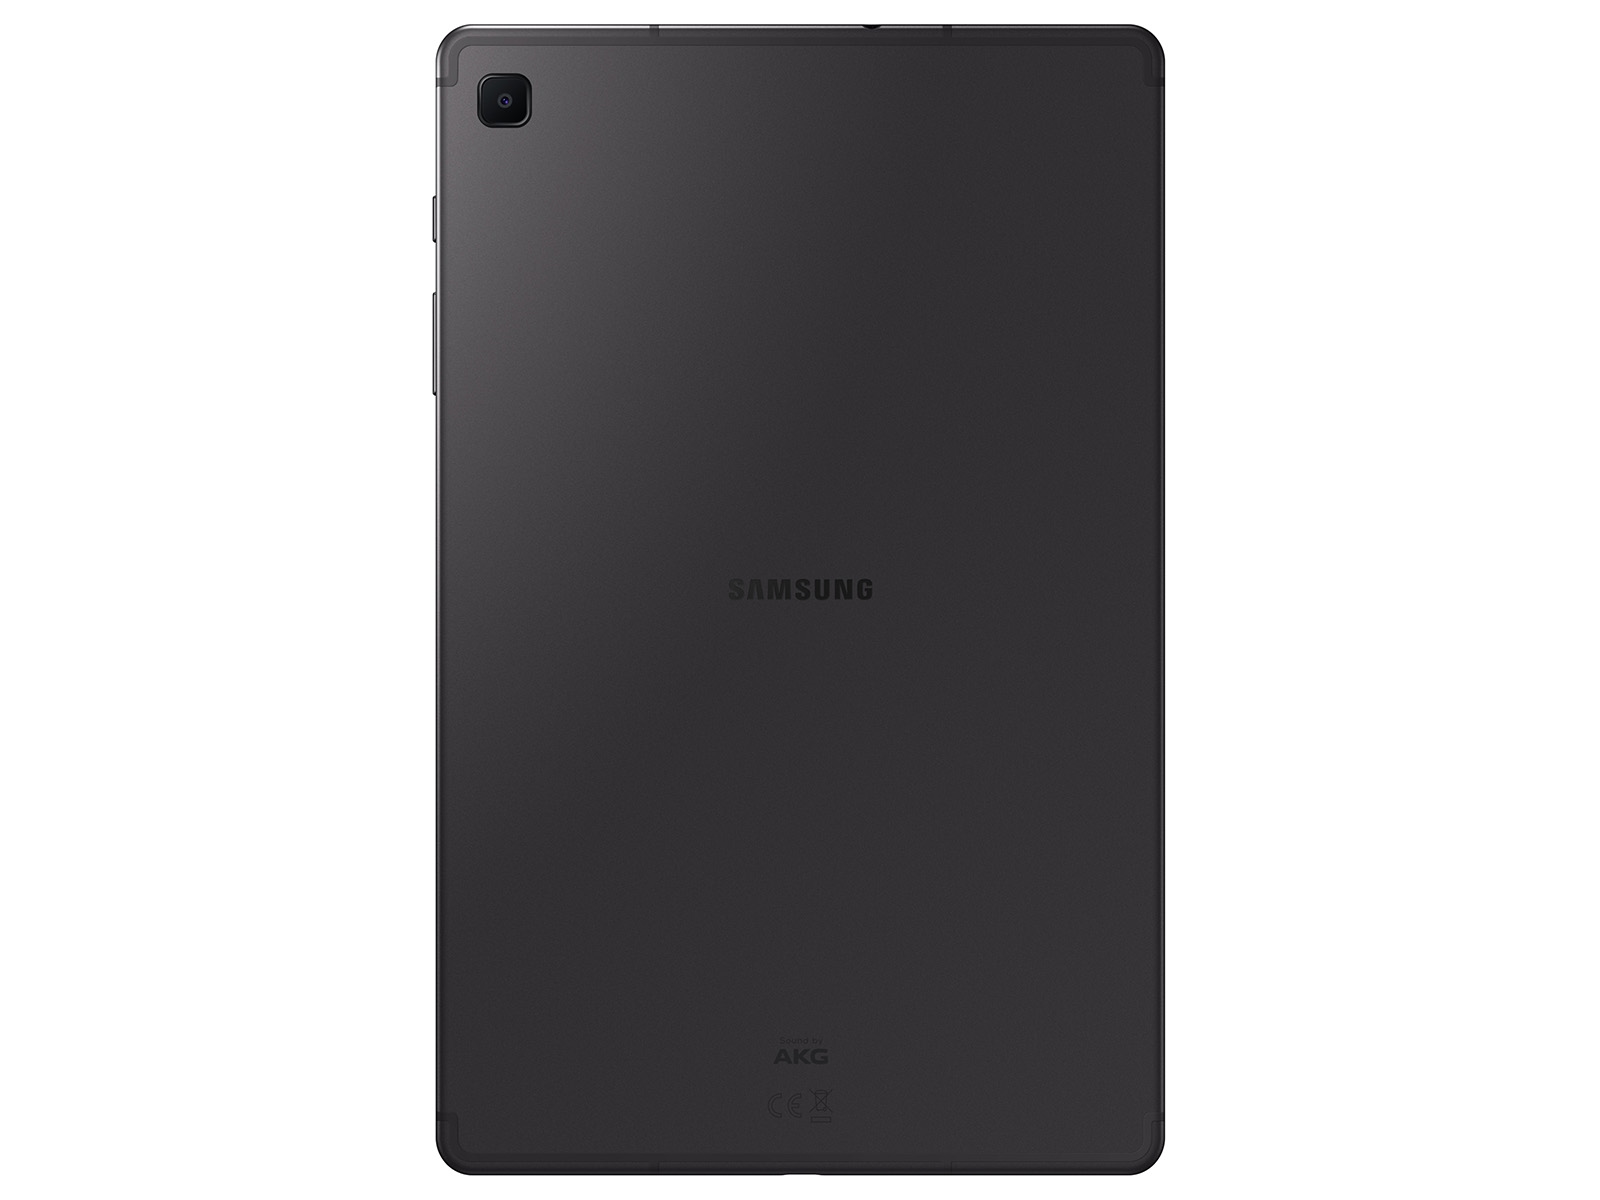 Galaxy Tab S6 Lite 128GB Oxford Gray Tablets - SM-P613NZAEXAR 